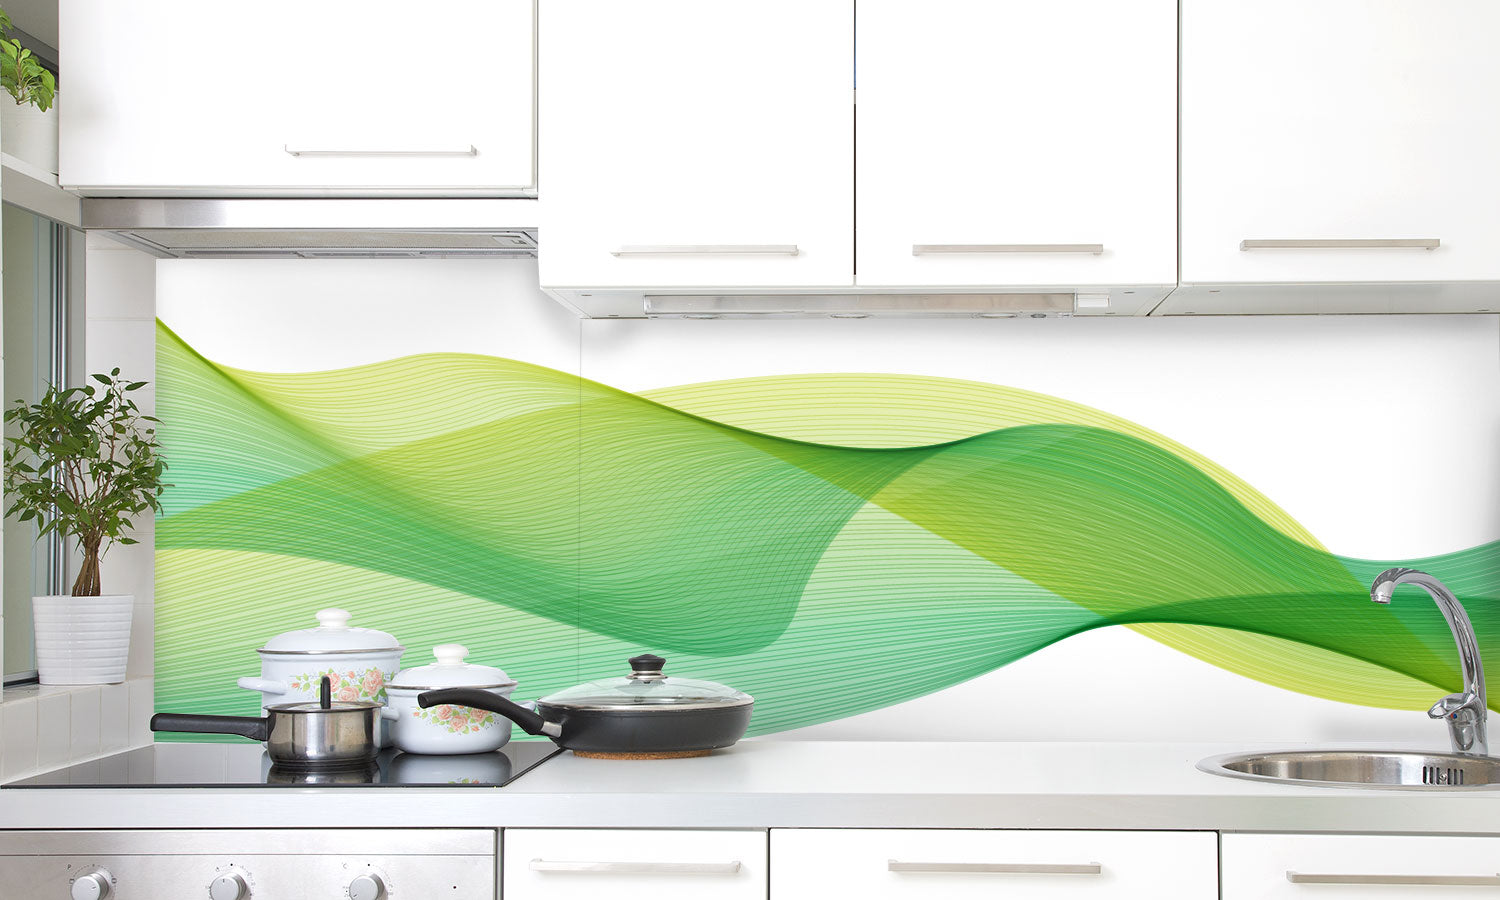 Kuhinjski paneli  Črte zelene - Stekleni / PVC plošče / Pleksi steklo - s tiskom za kuhinjo, Stenske obloge PKU033 - Life-decor.si